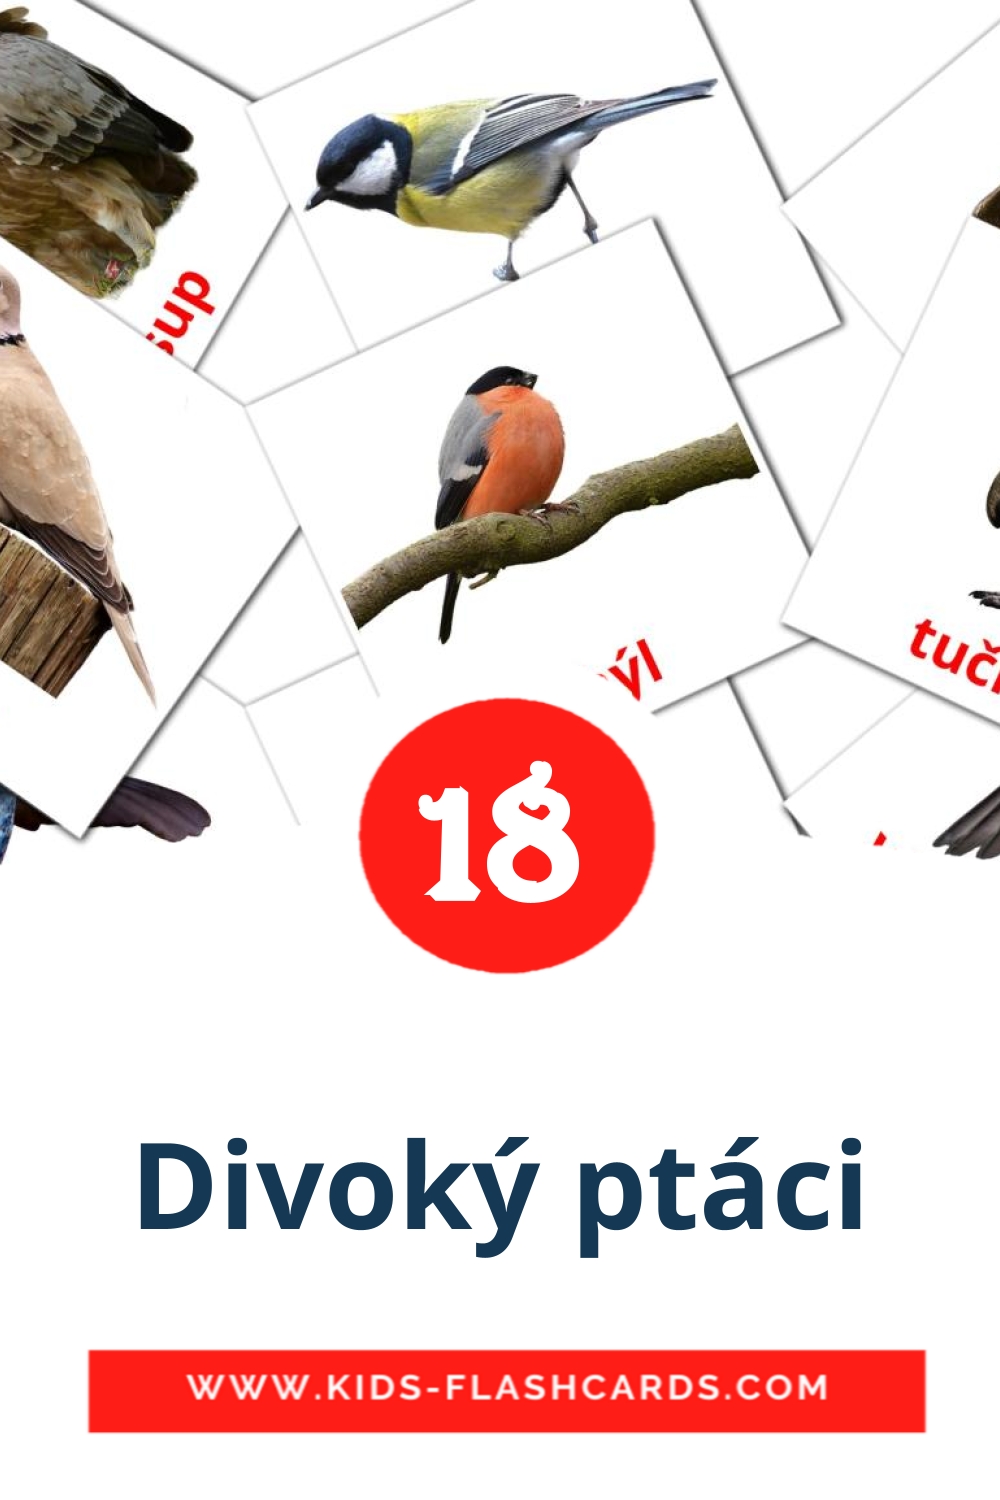 Divoký ptáci на чешском для Детского Сада (18 карточек)